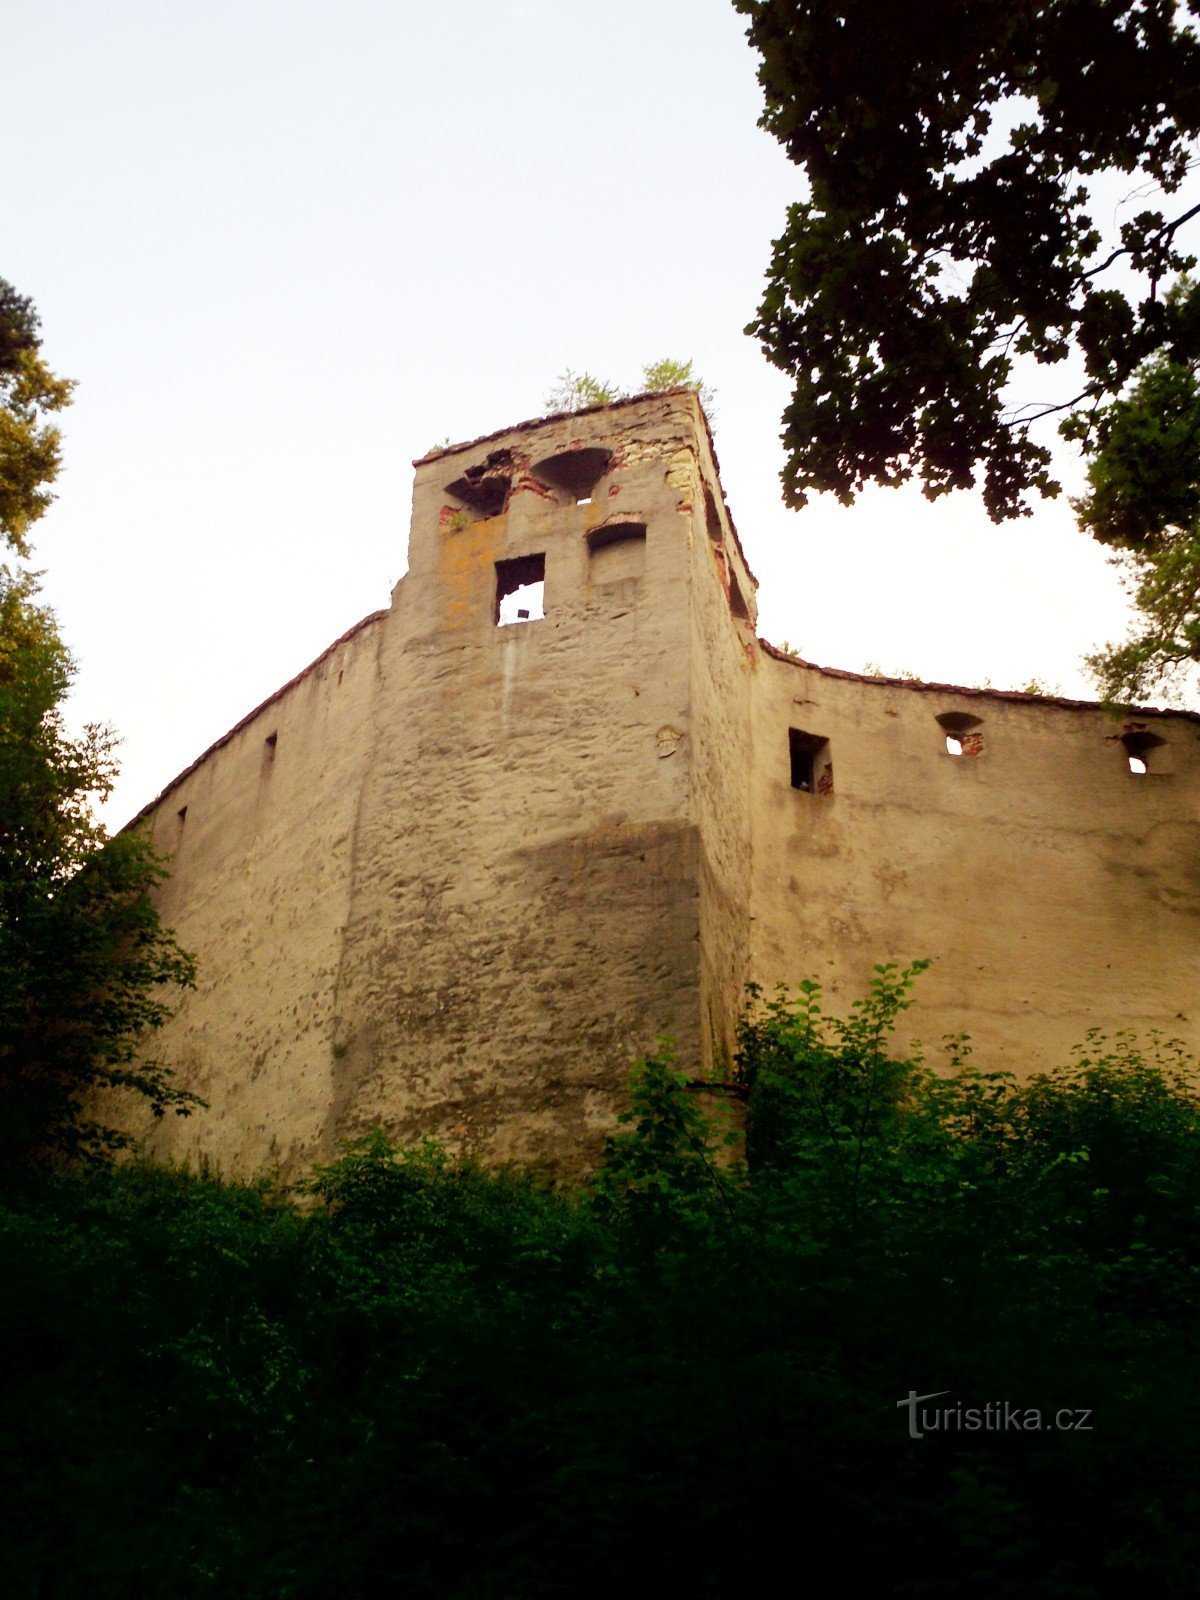 Босковіце - замок